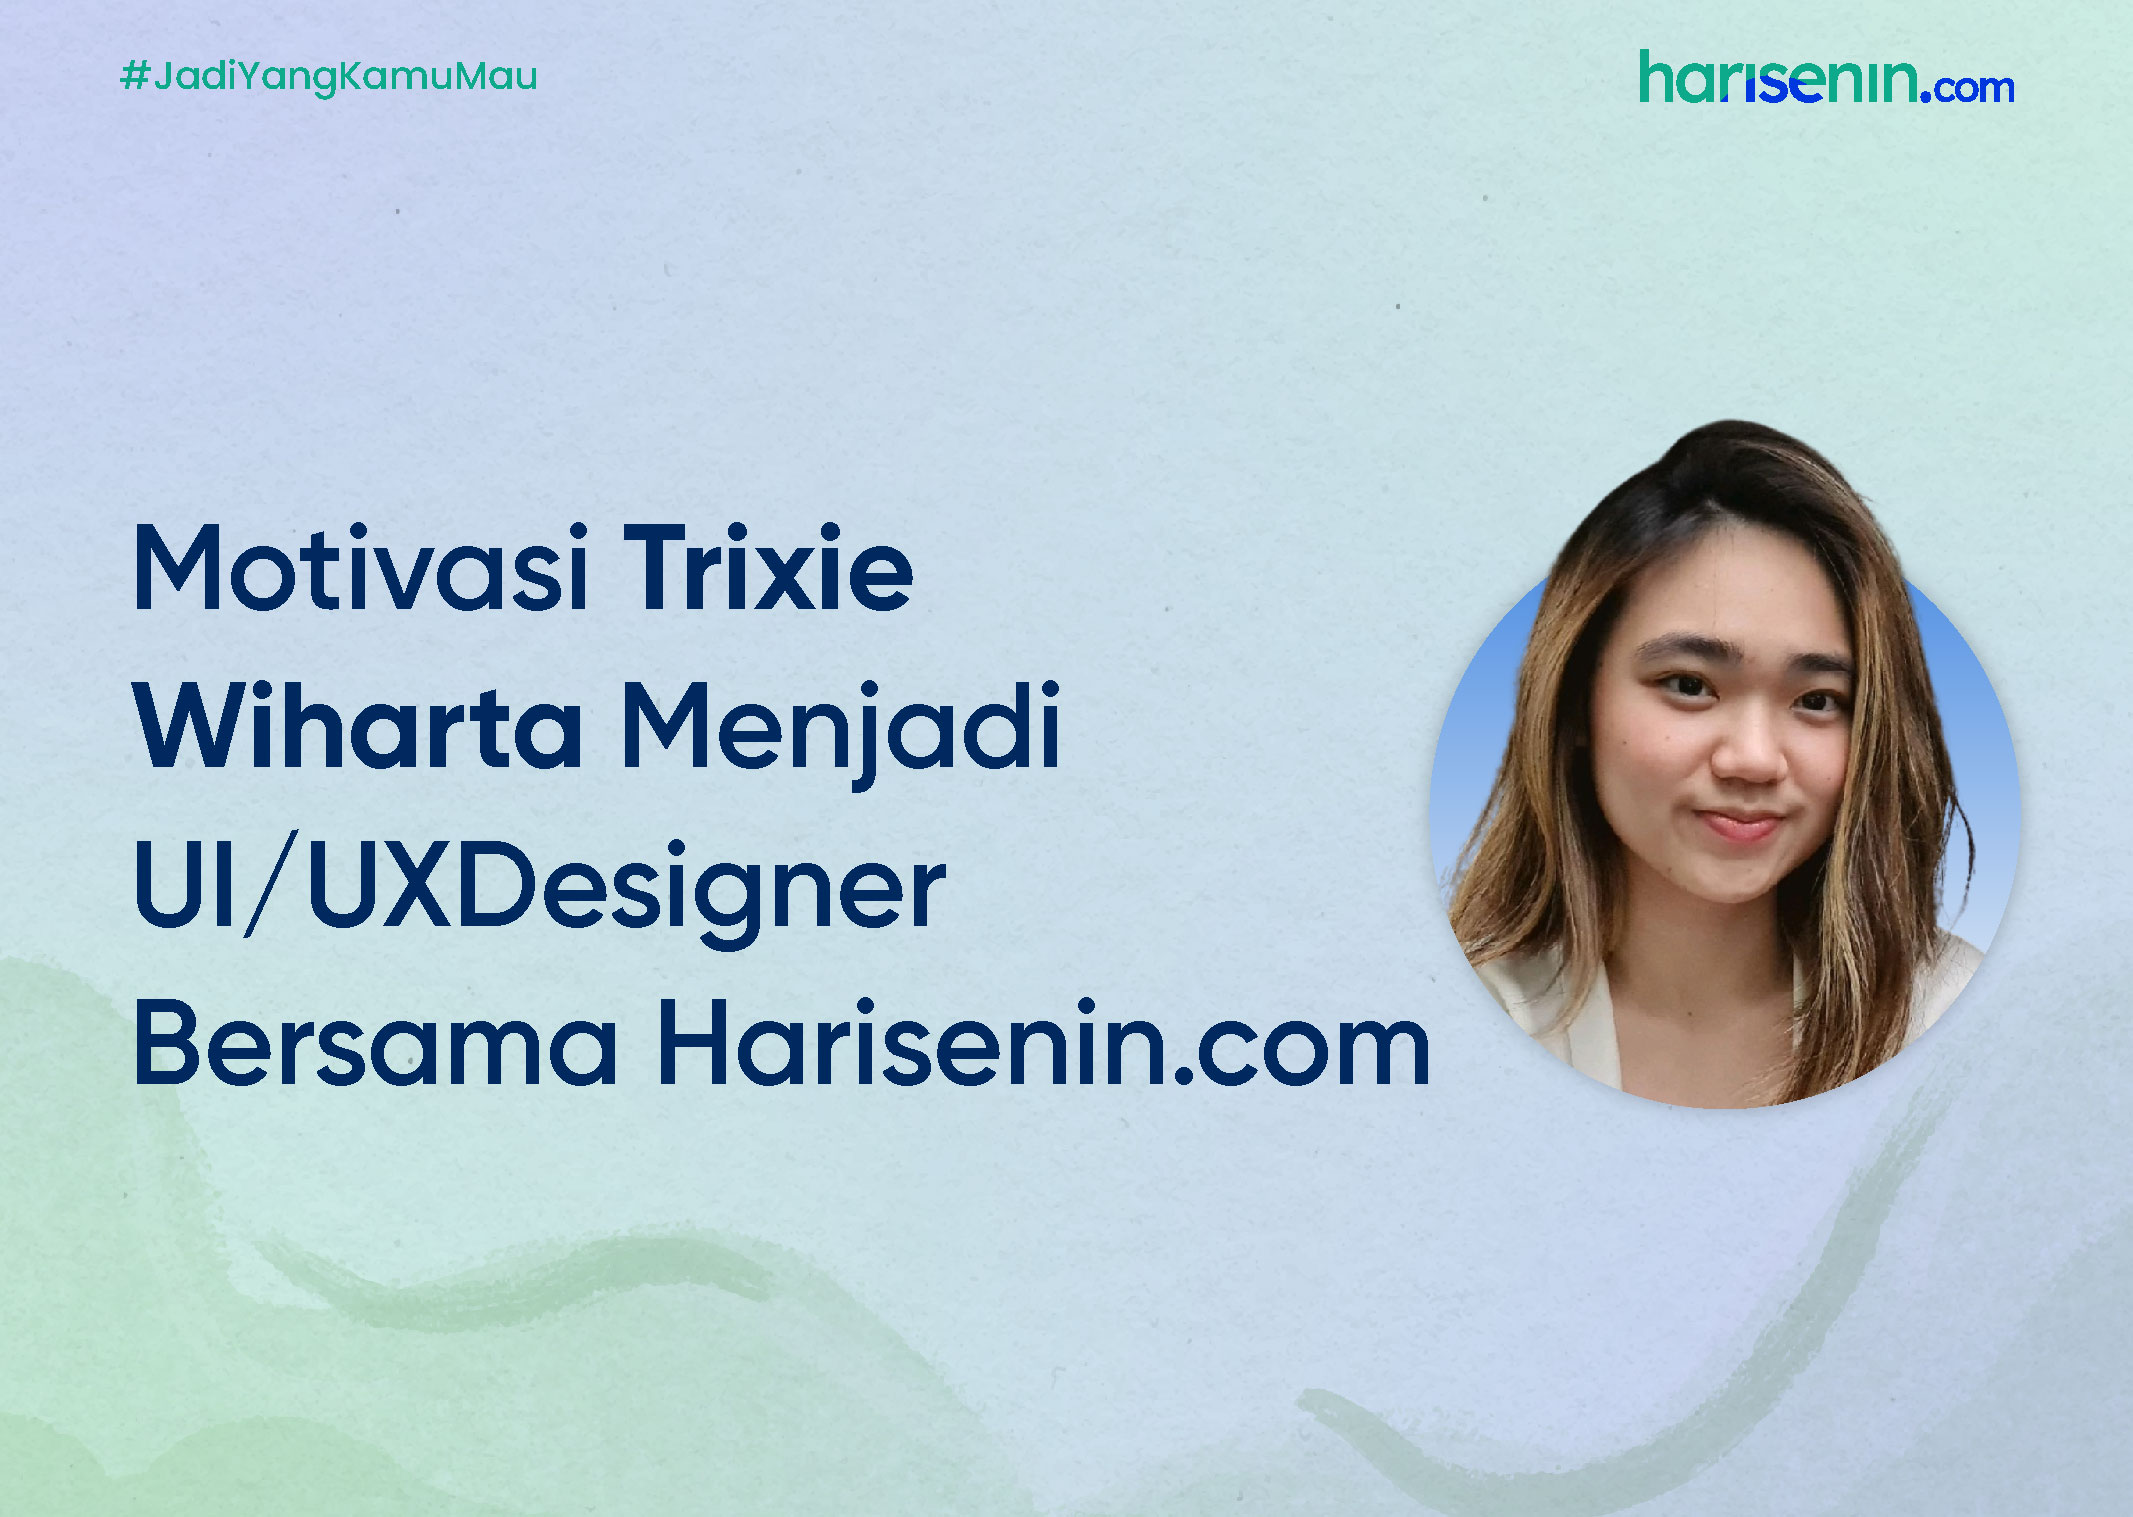 Motivasi Trixie Wiharta Menjadi UI/UX Designer Bersama Harisenin.com